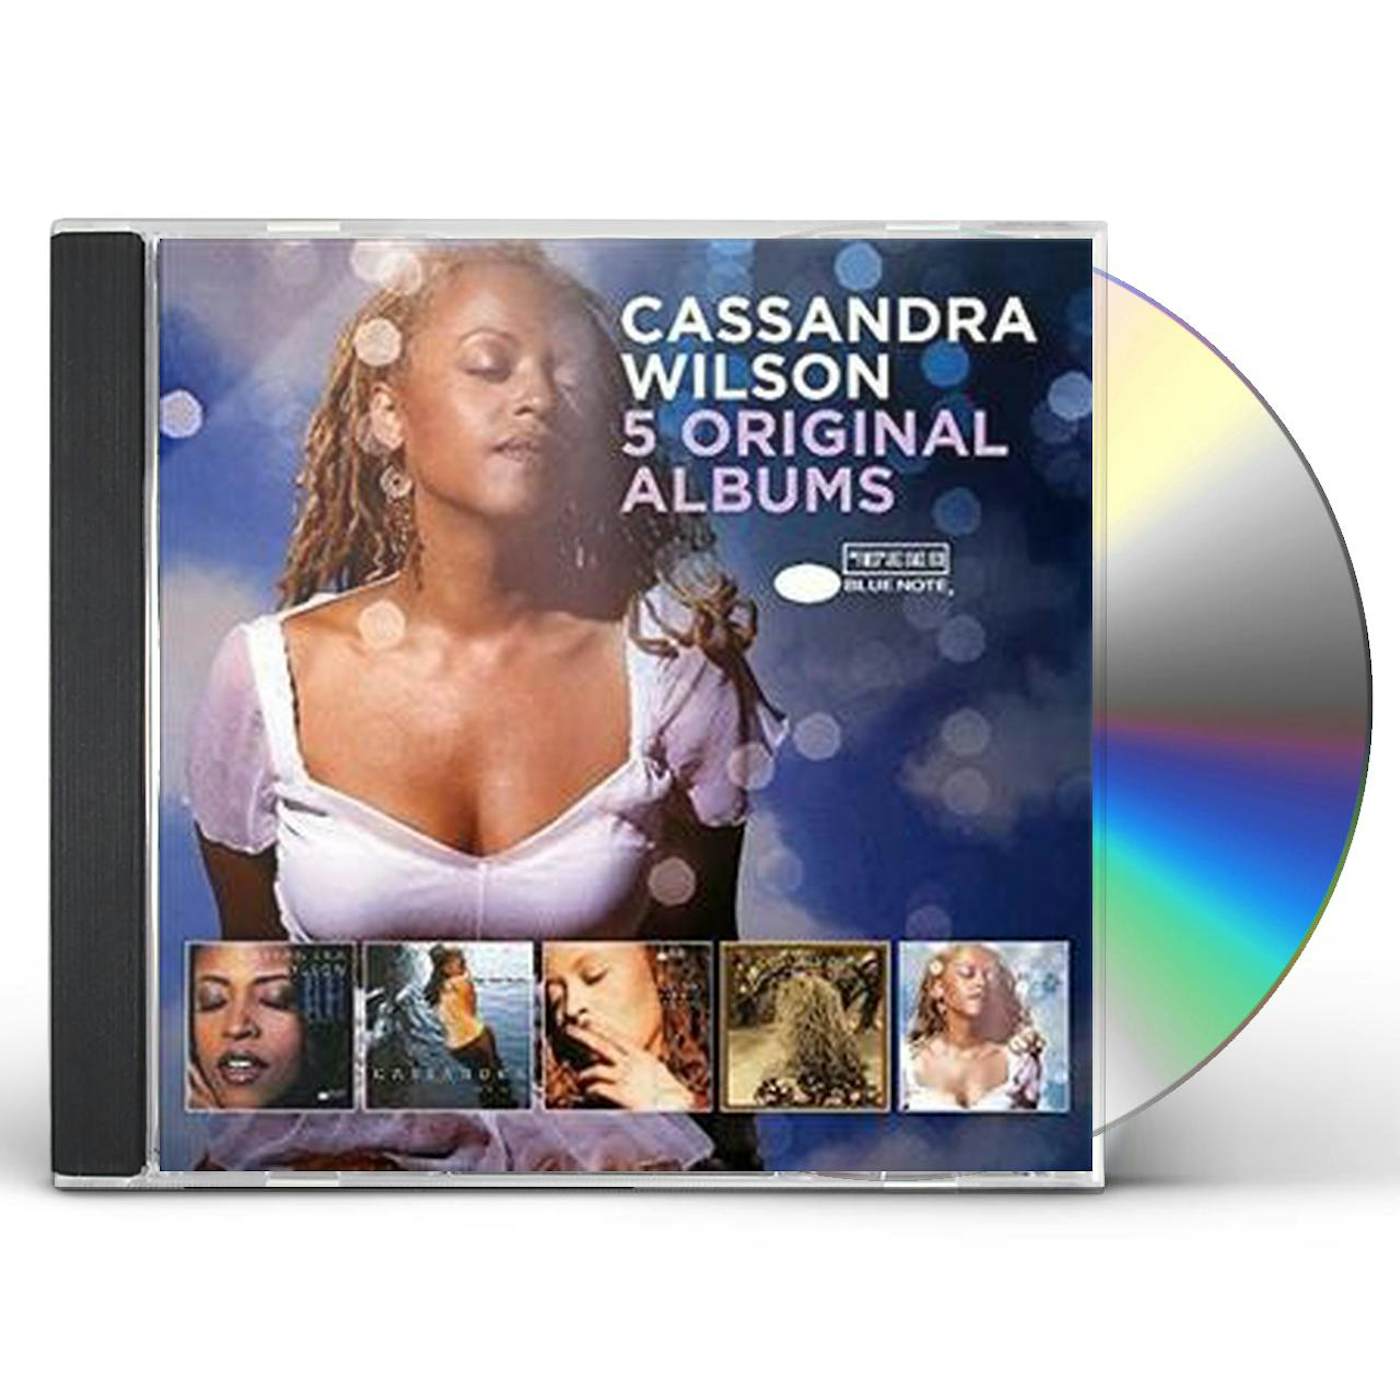 Cassandra Wilson 5 ORIGINAL ALBUMS CD